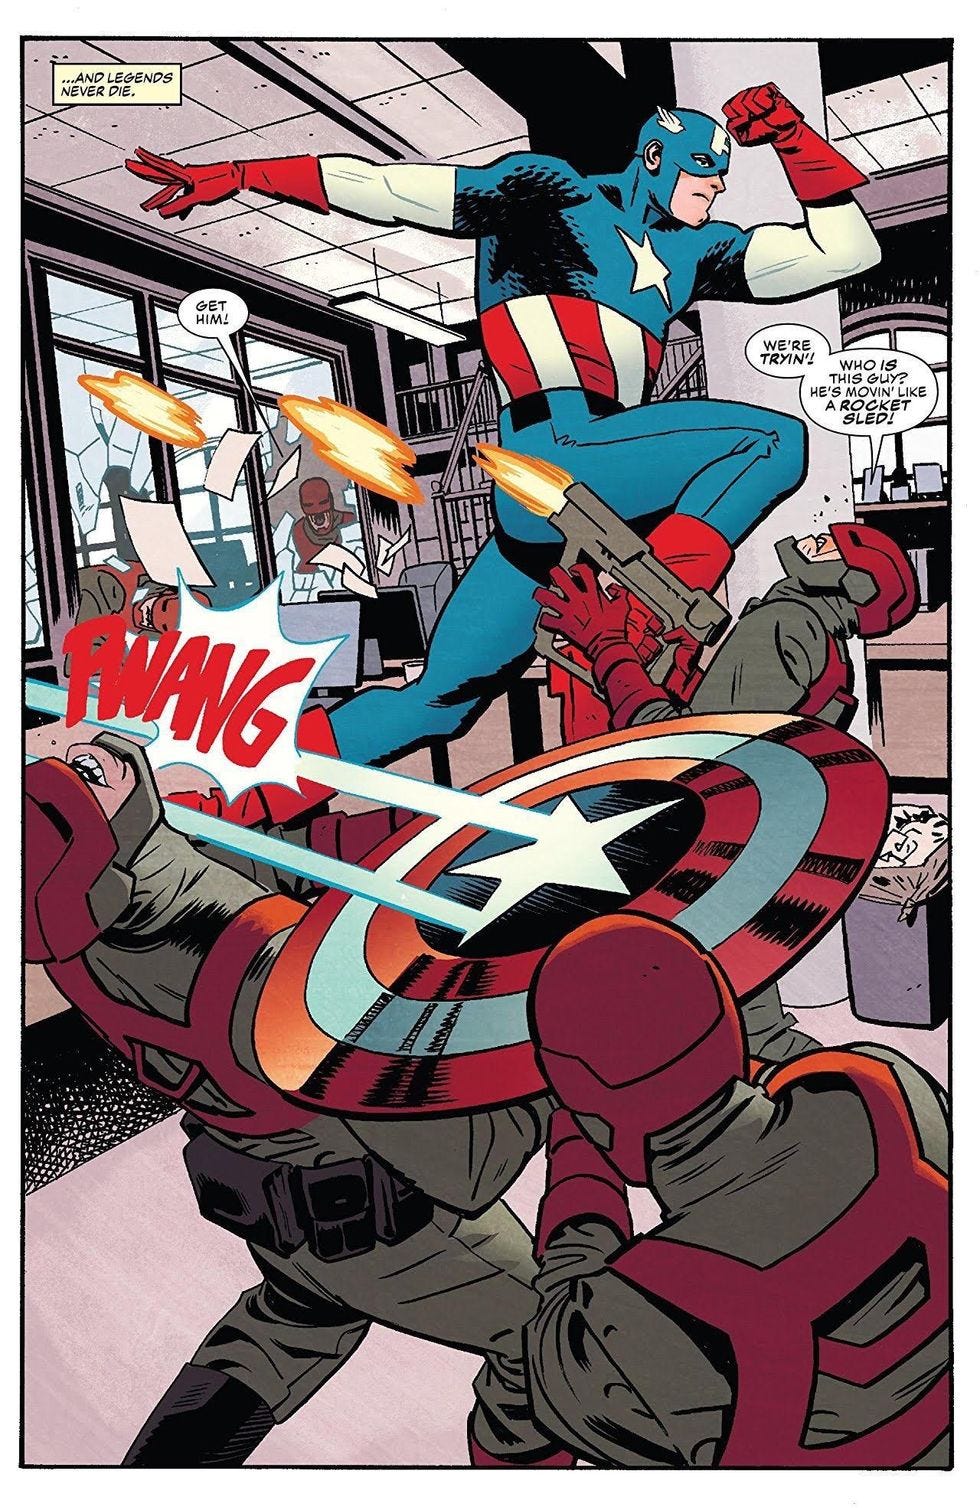 Captain America punching nazis